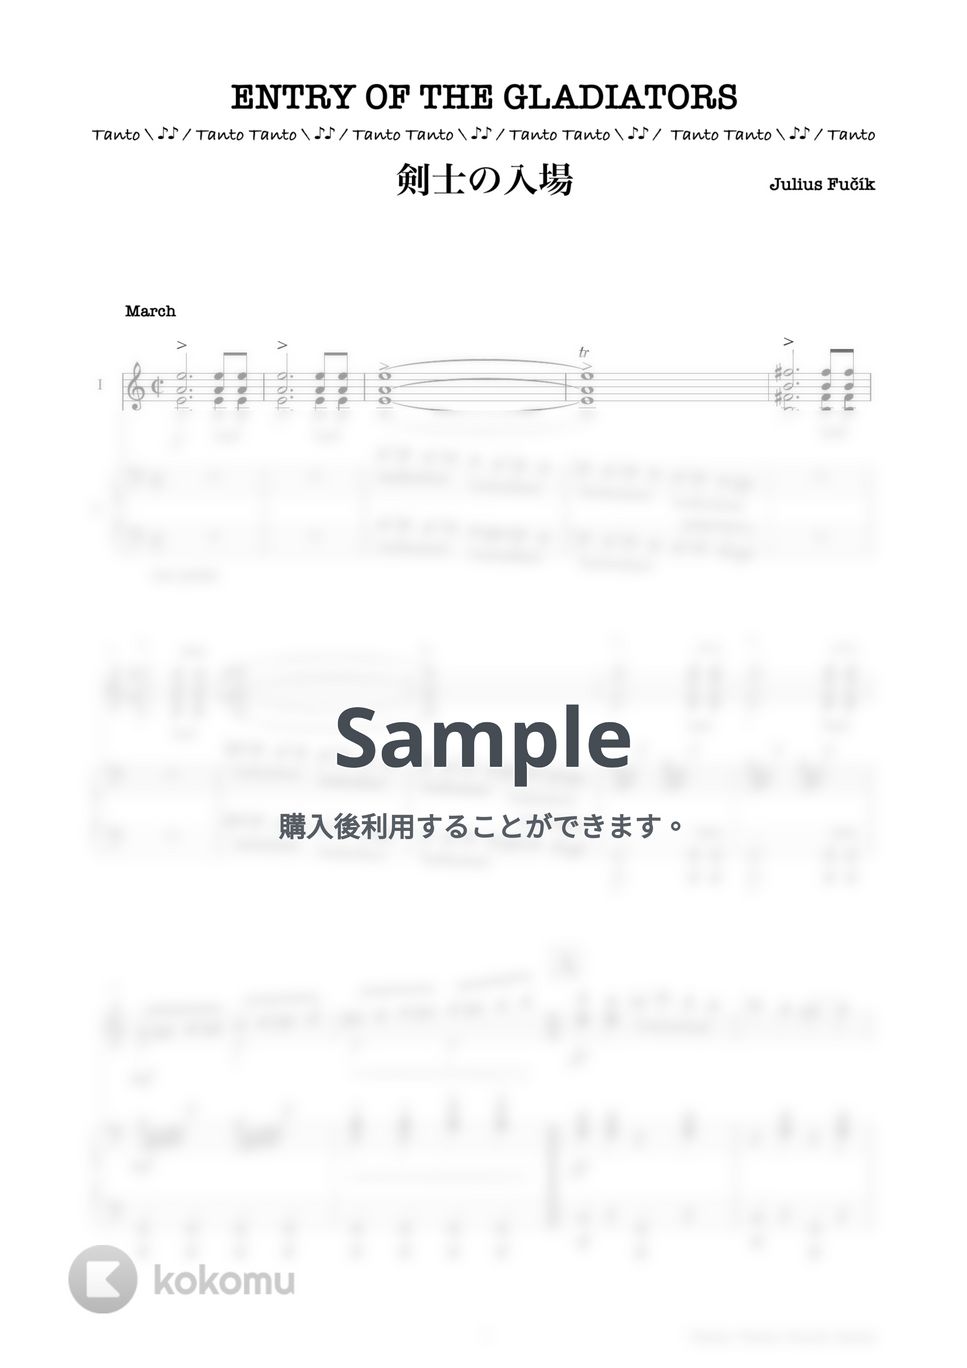 ユリウス・フチーク - 剣士の入場 ENTRY OF THE GLADIATORS Short Ver. (Opening曲 Kenhamo & Piano Ensemble in C) by Tanto Tanto